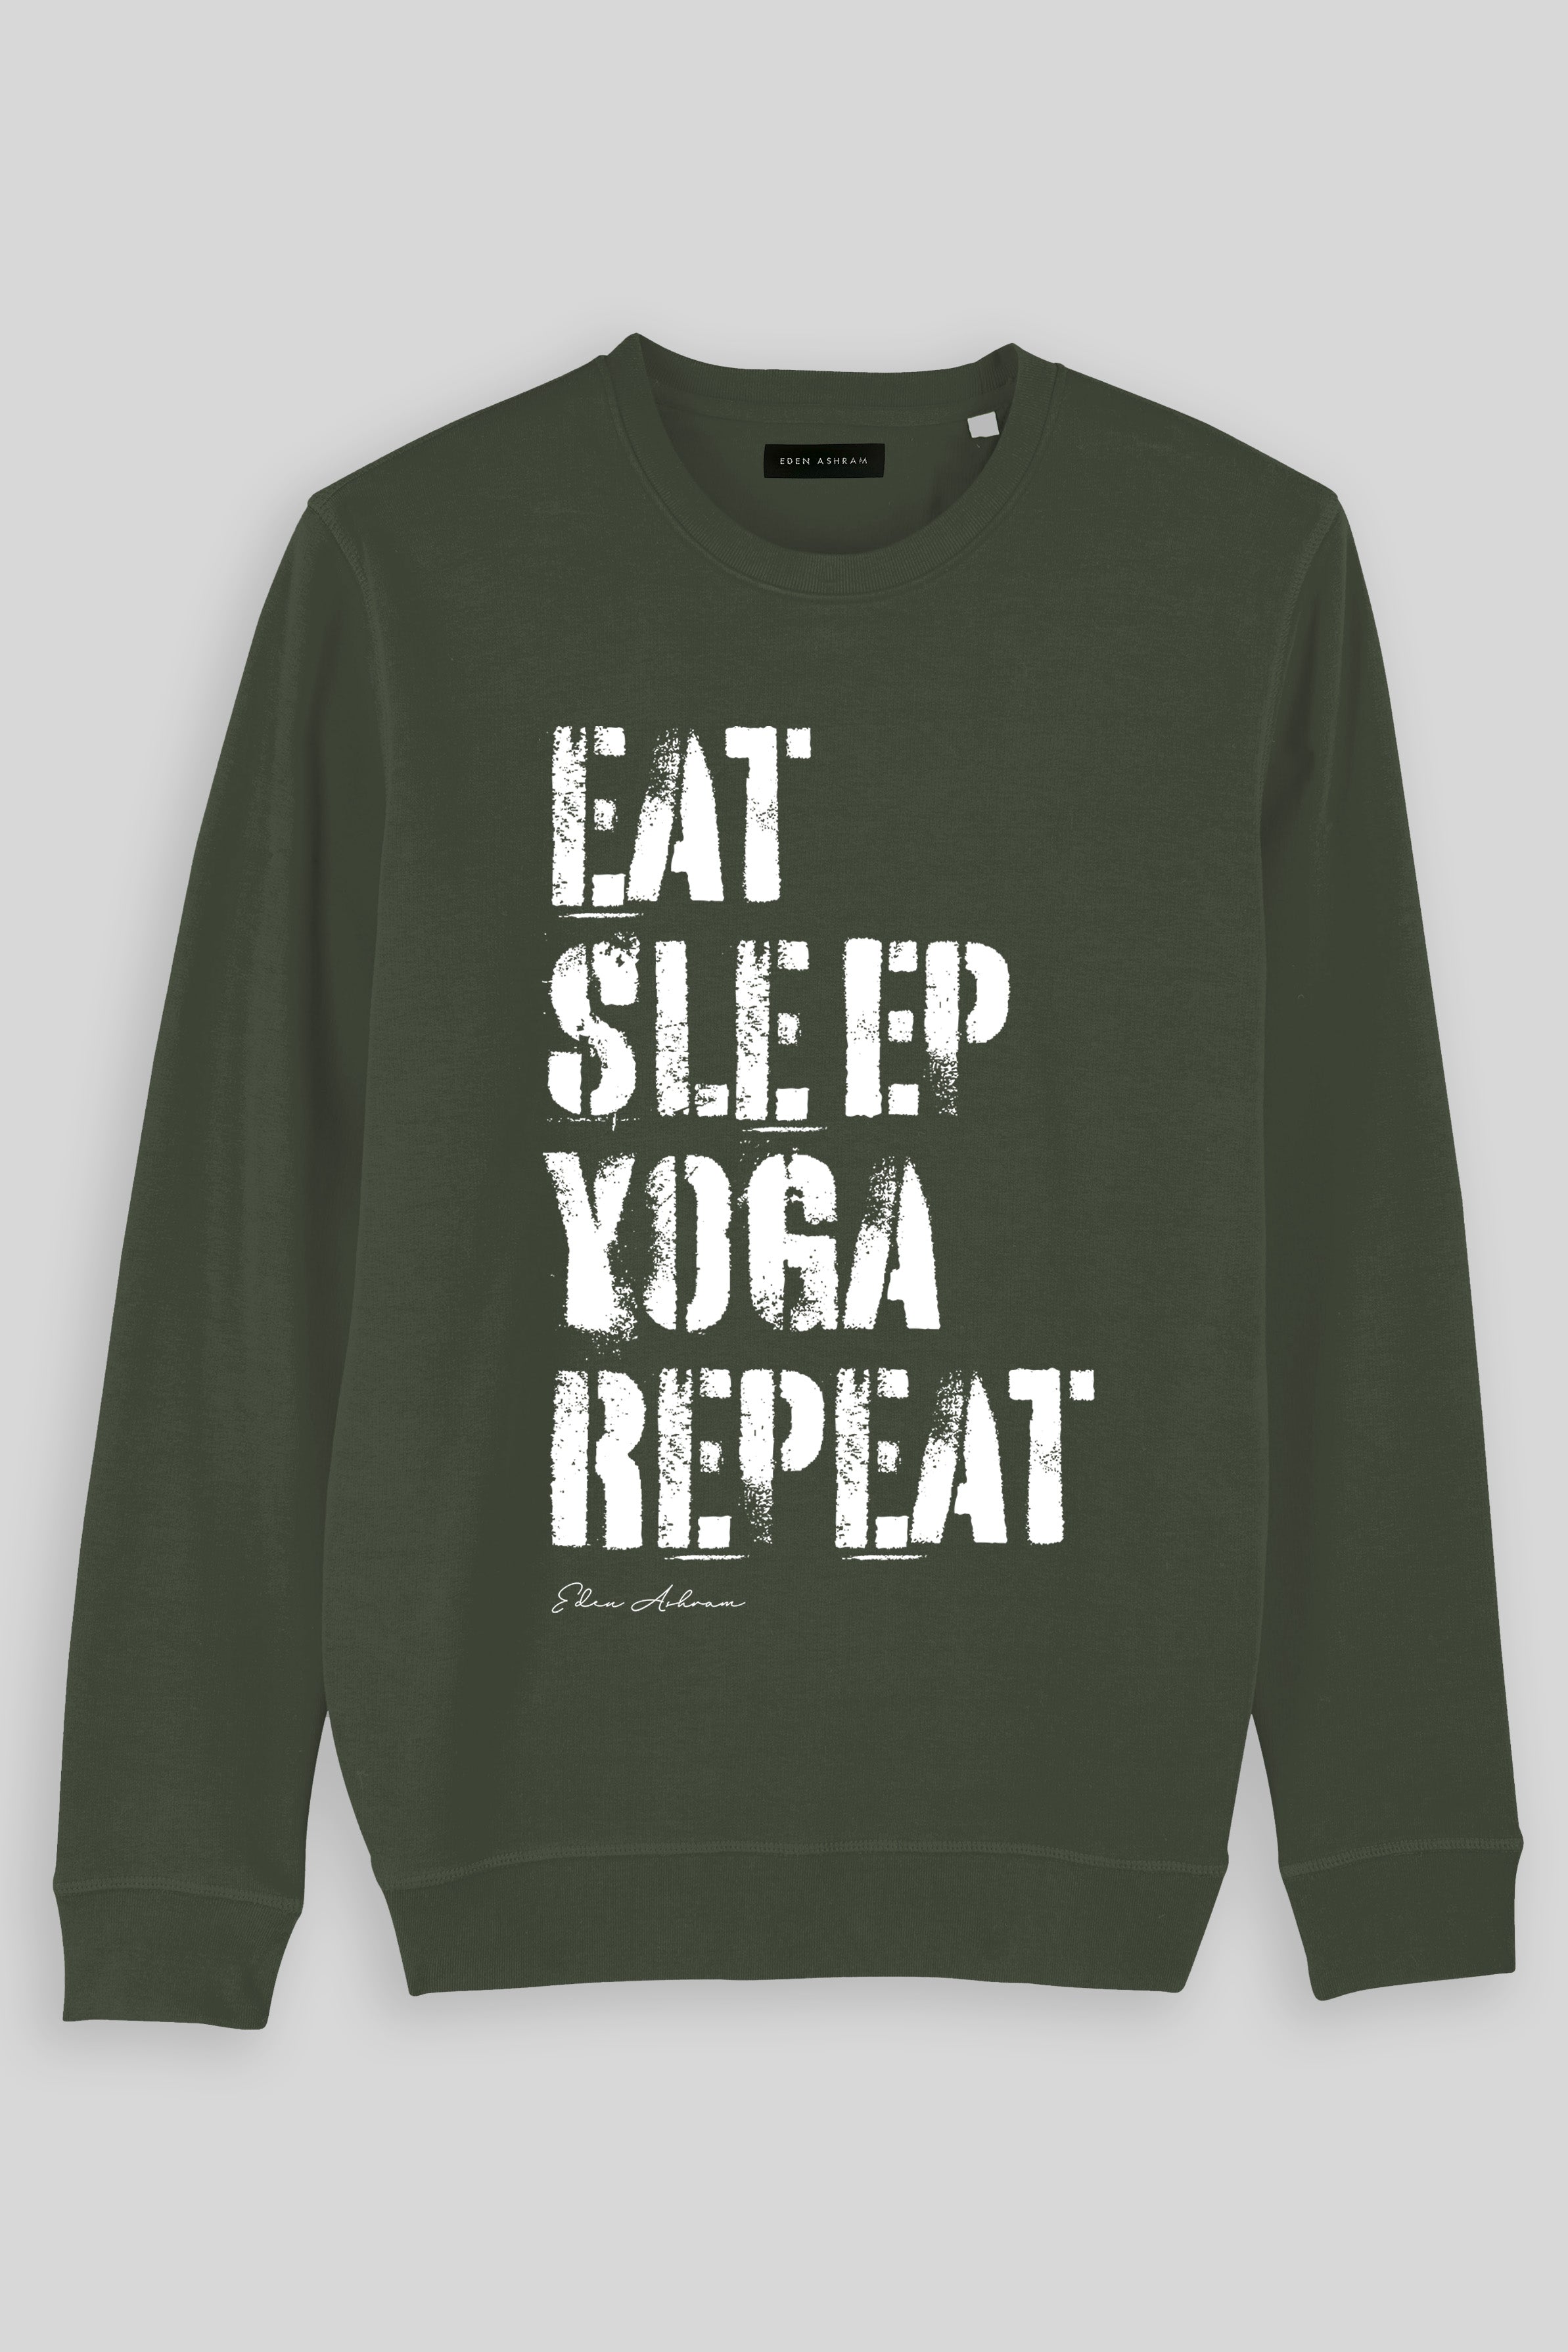 Eden Ashram Eat, Sleep, Yoga Repeat Premium Crew Neck Sweatshirt Khaki